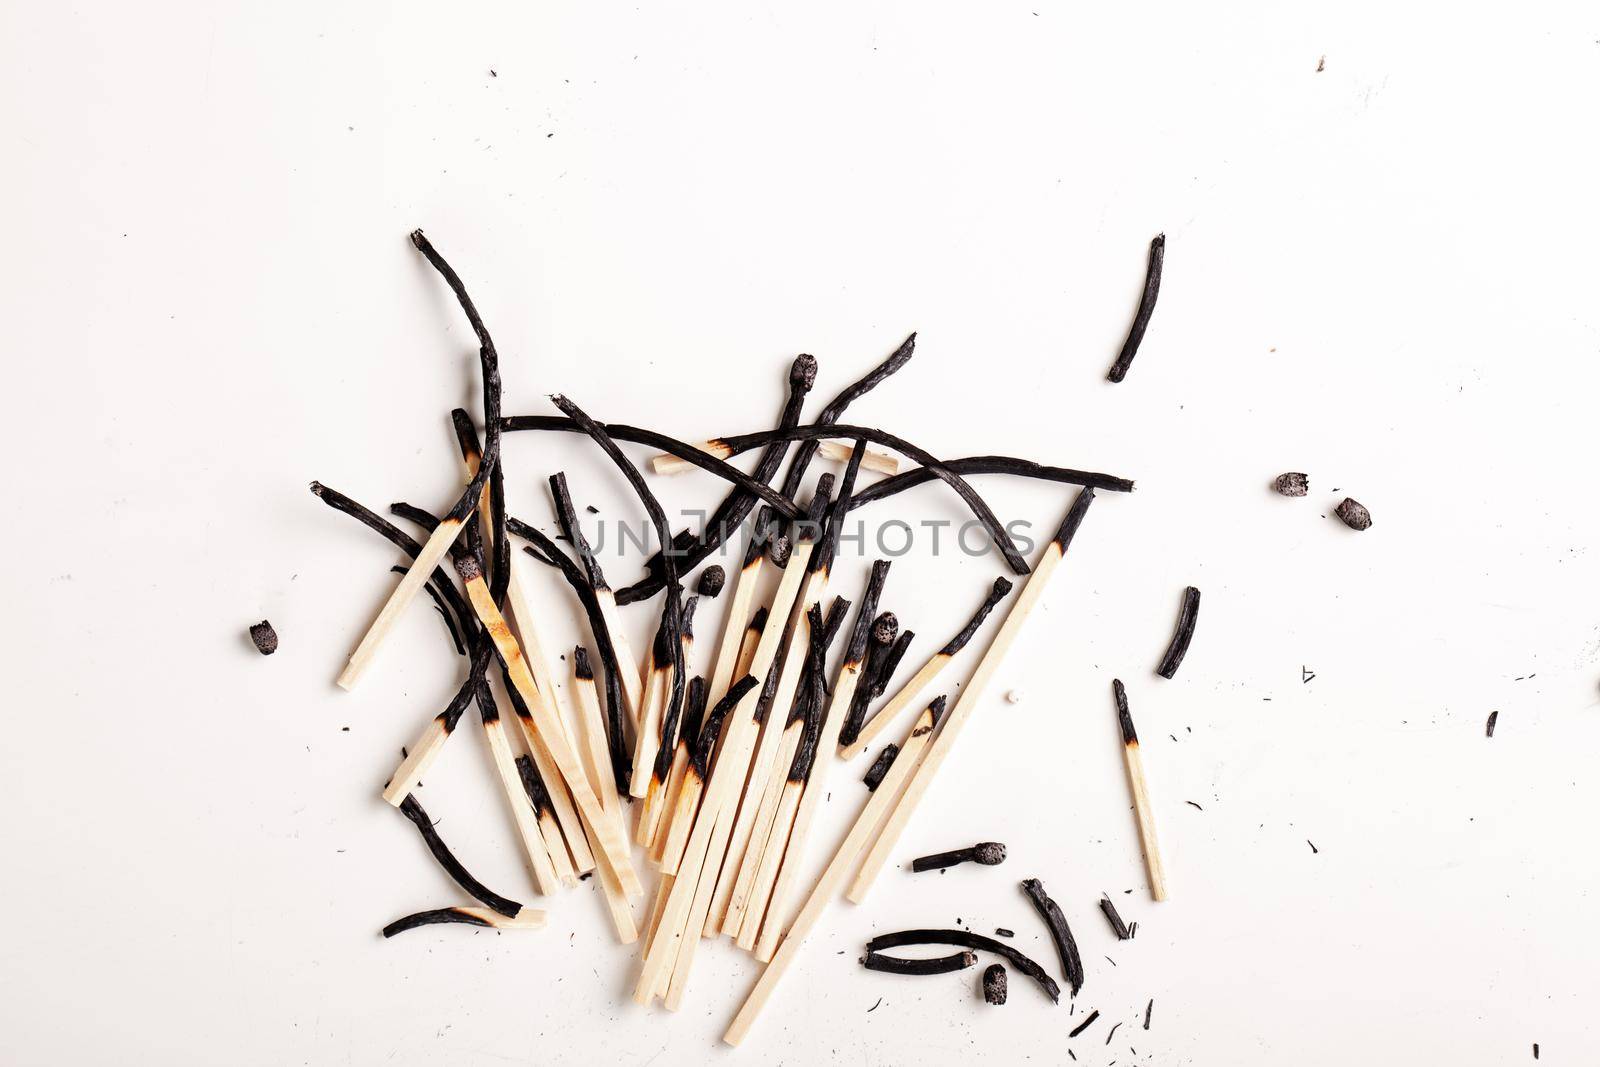 burnt matchsticks by kokimk